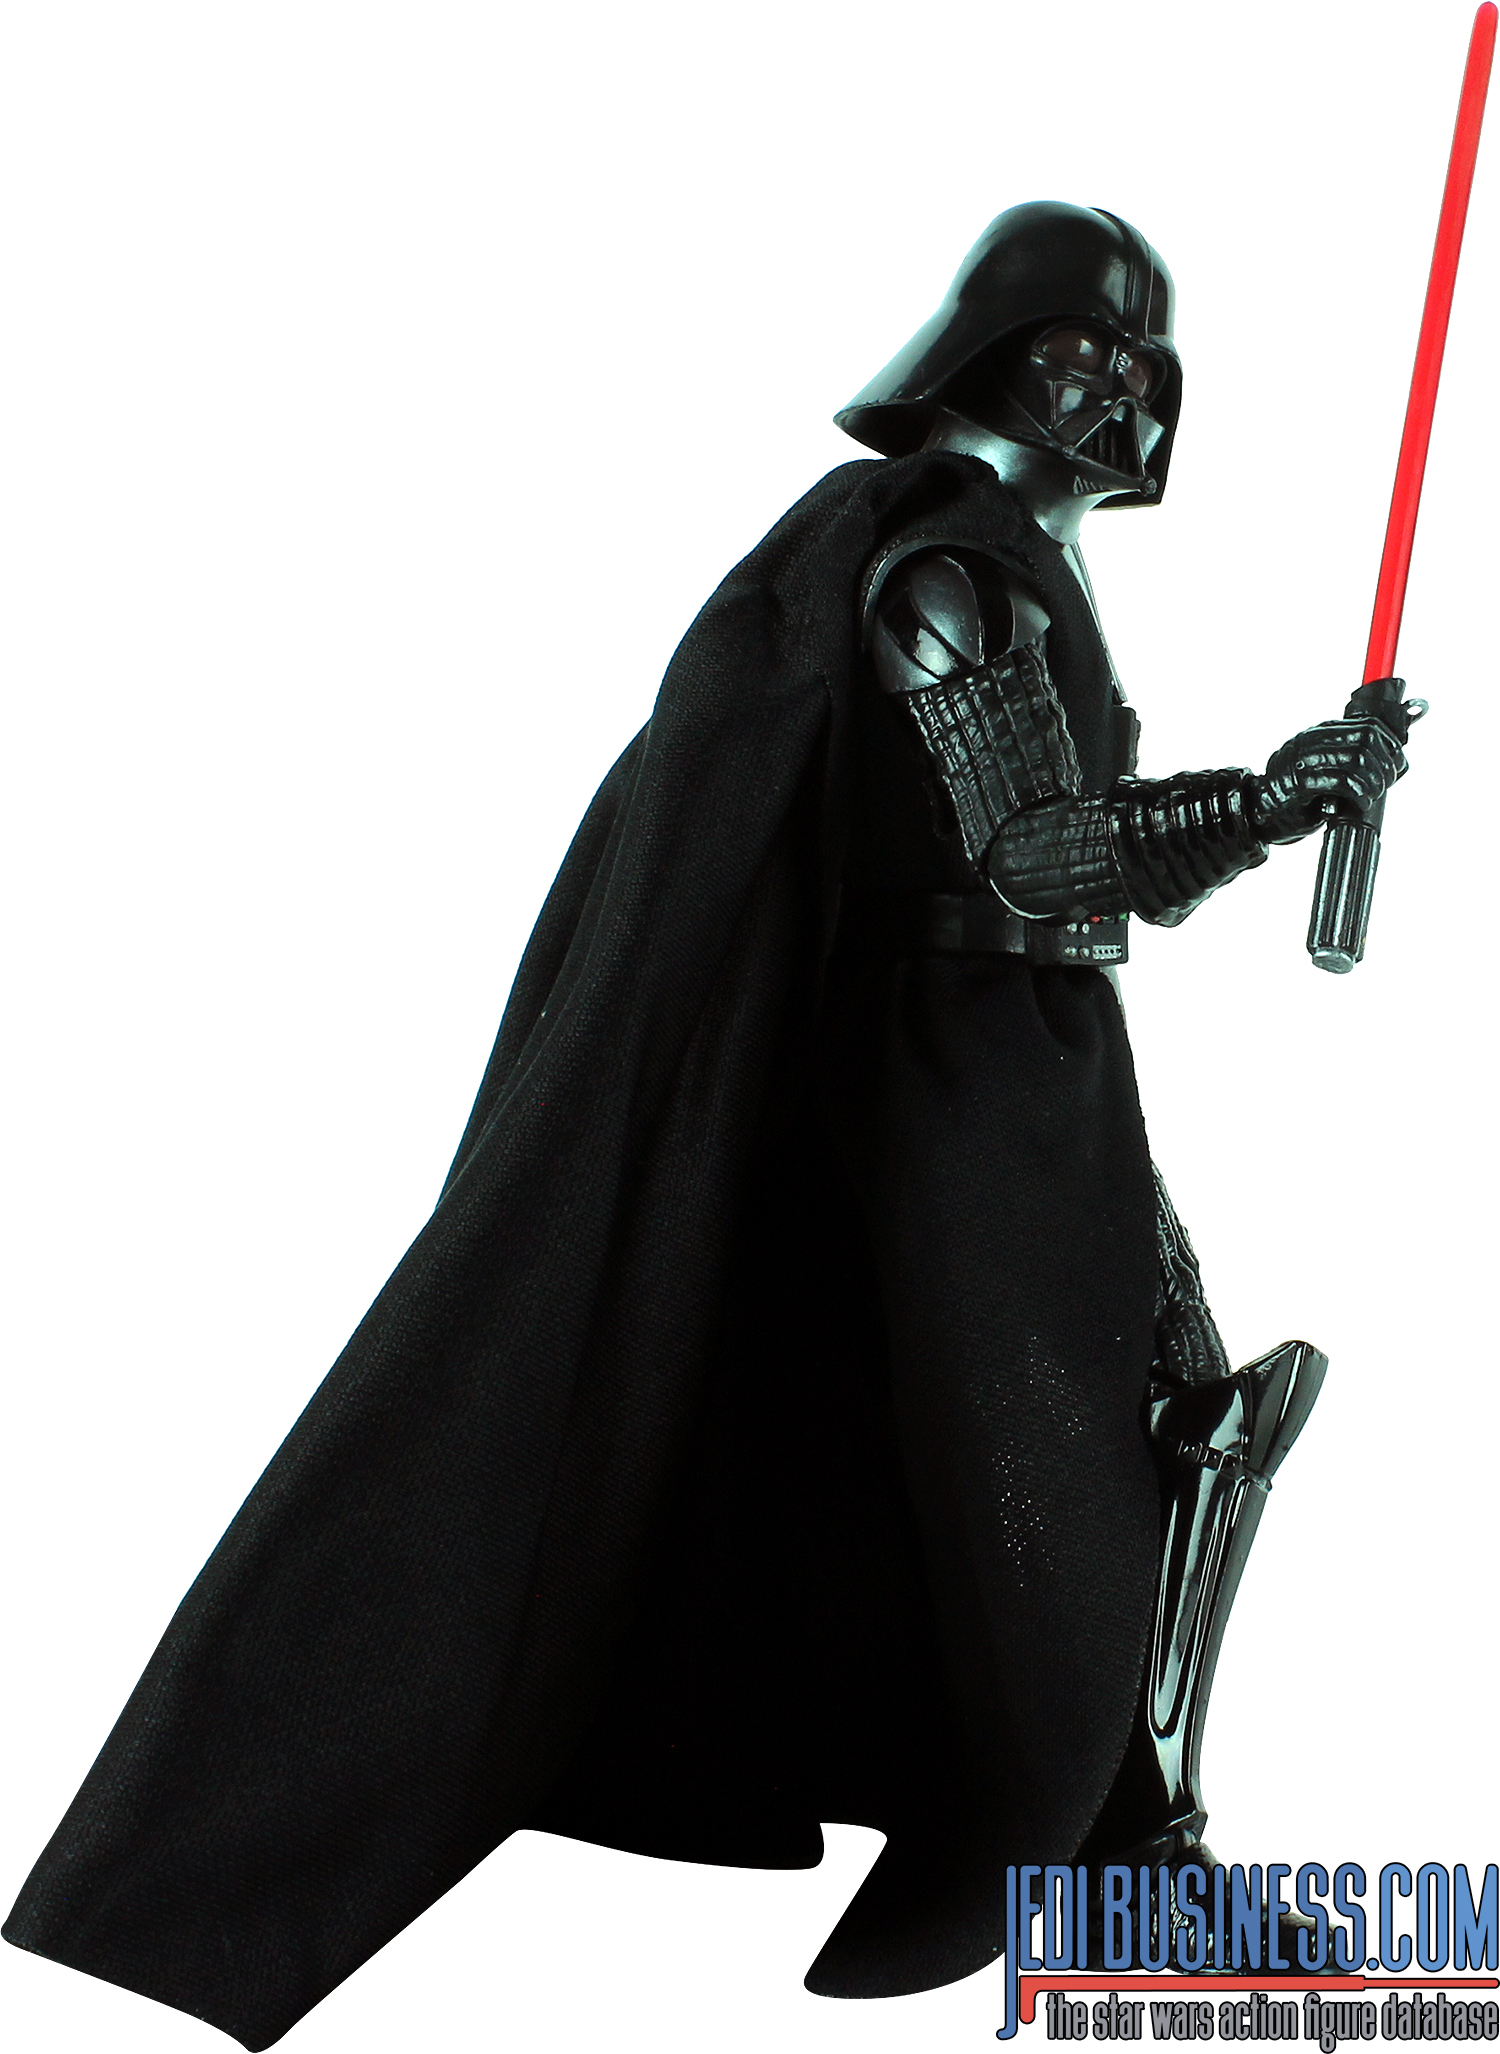 Darth Vader Star Wars